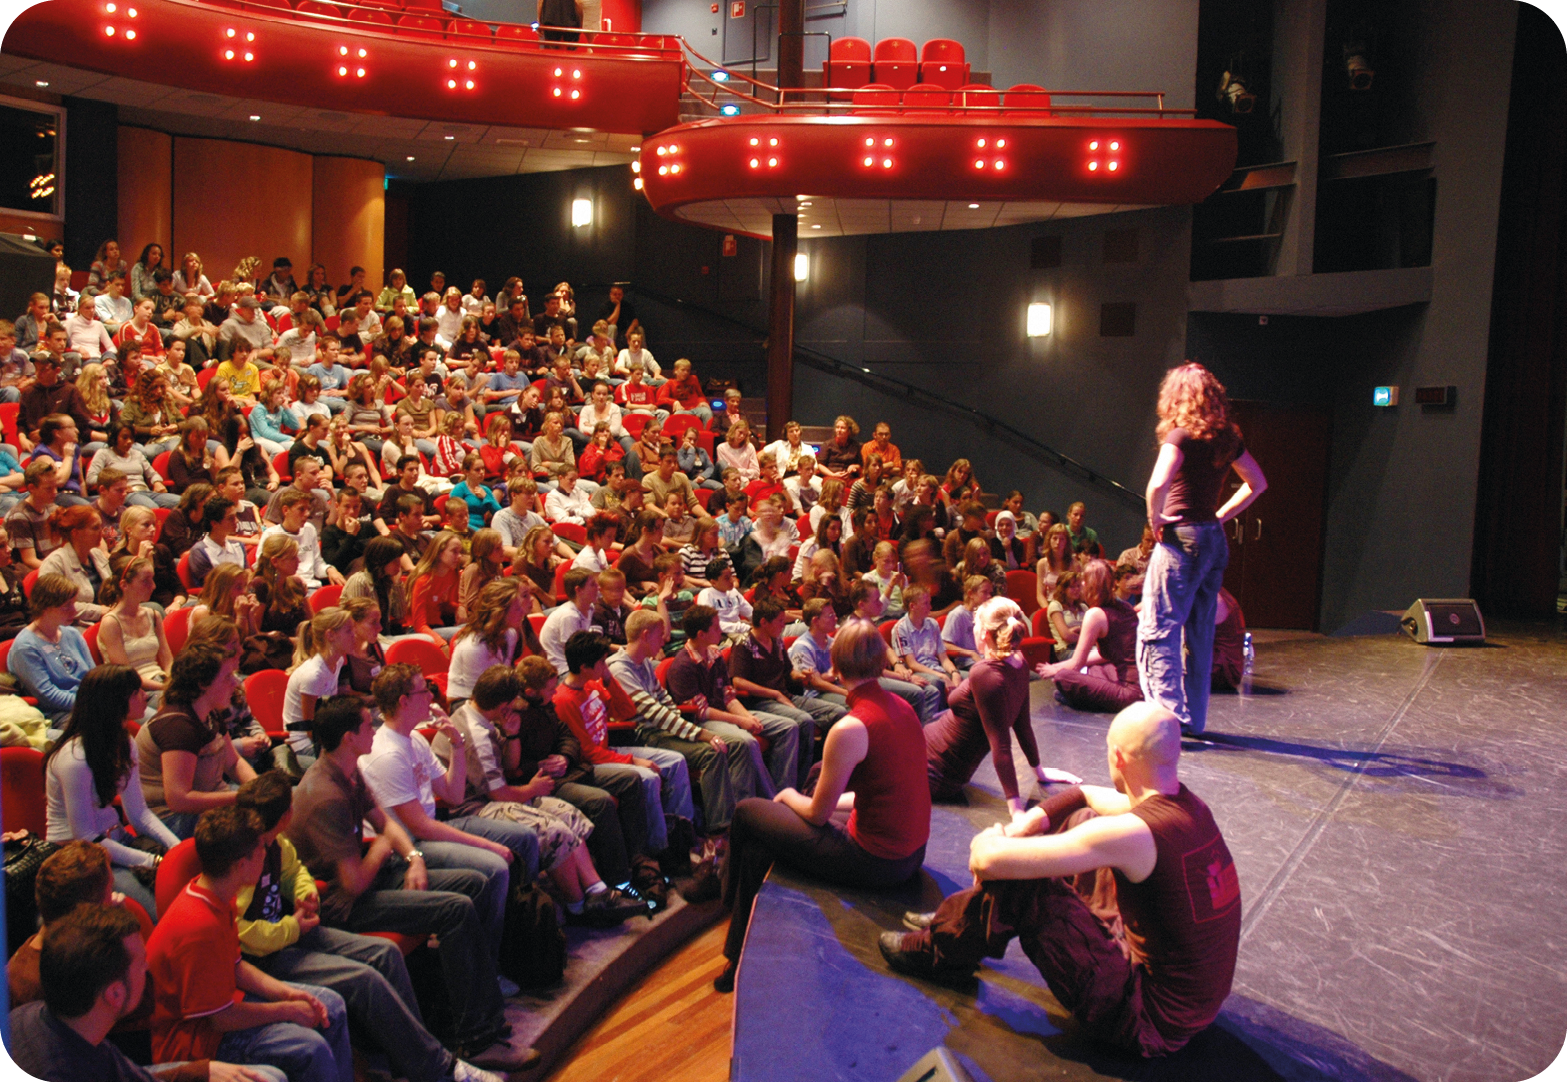 Fotografia. Vista lateral do interior de um teatro lotado. A plateia observa um grupo de seis pessoas paradas em um pequeno palco; cinco estão sentadas e uma em pé com as mãos na cintura. Na parte superior, vista parcial de um camarote com cadeiras vermelhas vazias.